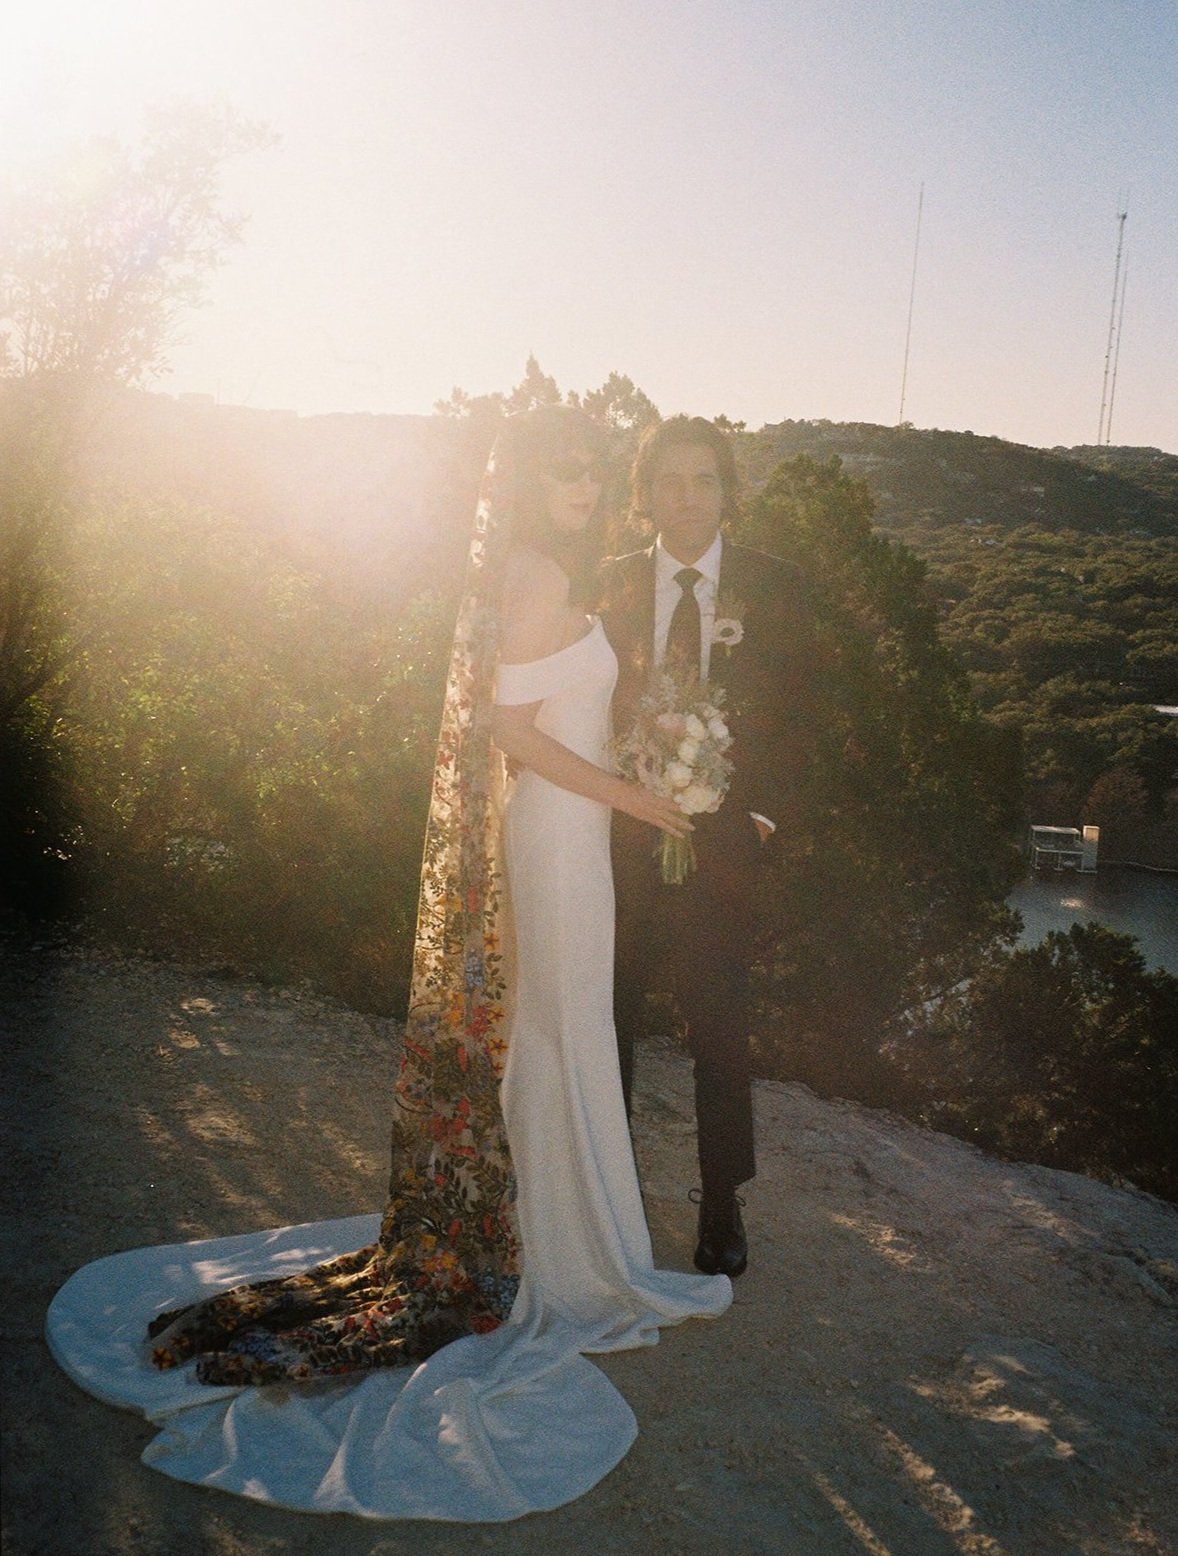 Best-Austin-Wedding-Photographers-Elopement-Film-35mm-Asheville-Santa-Barbara-Laguna-Gloria-33.jpg